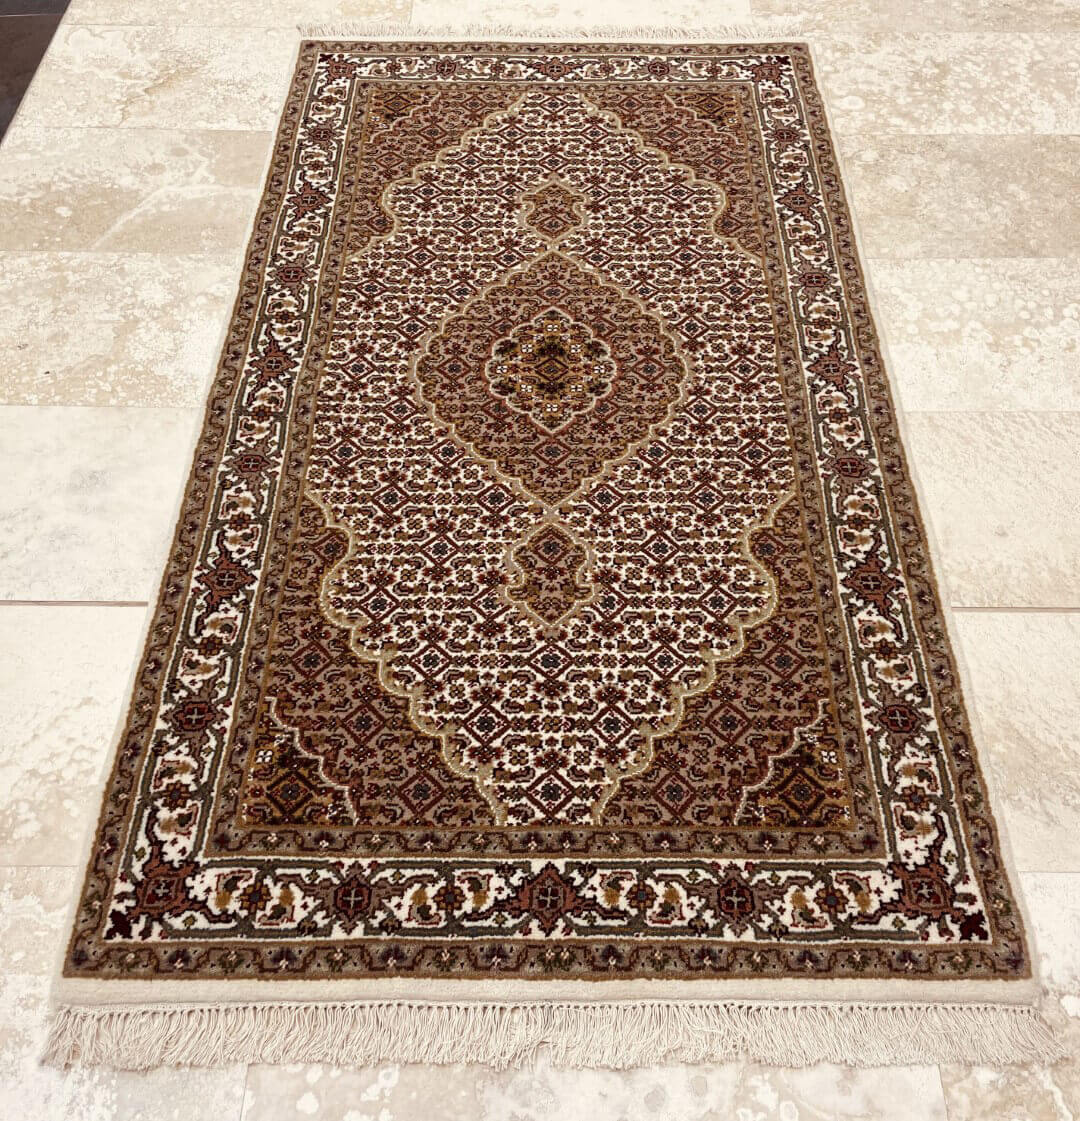 Orientální koberec Bidžár Premium